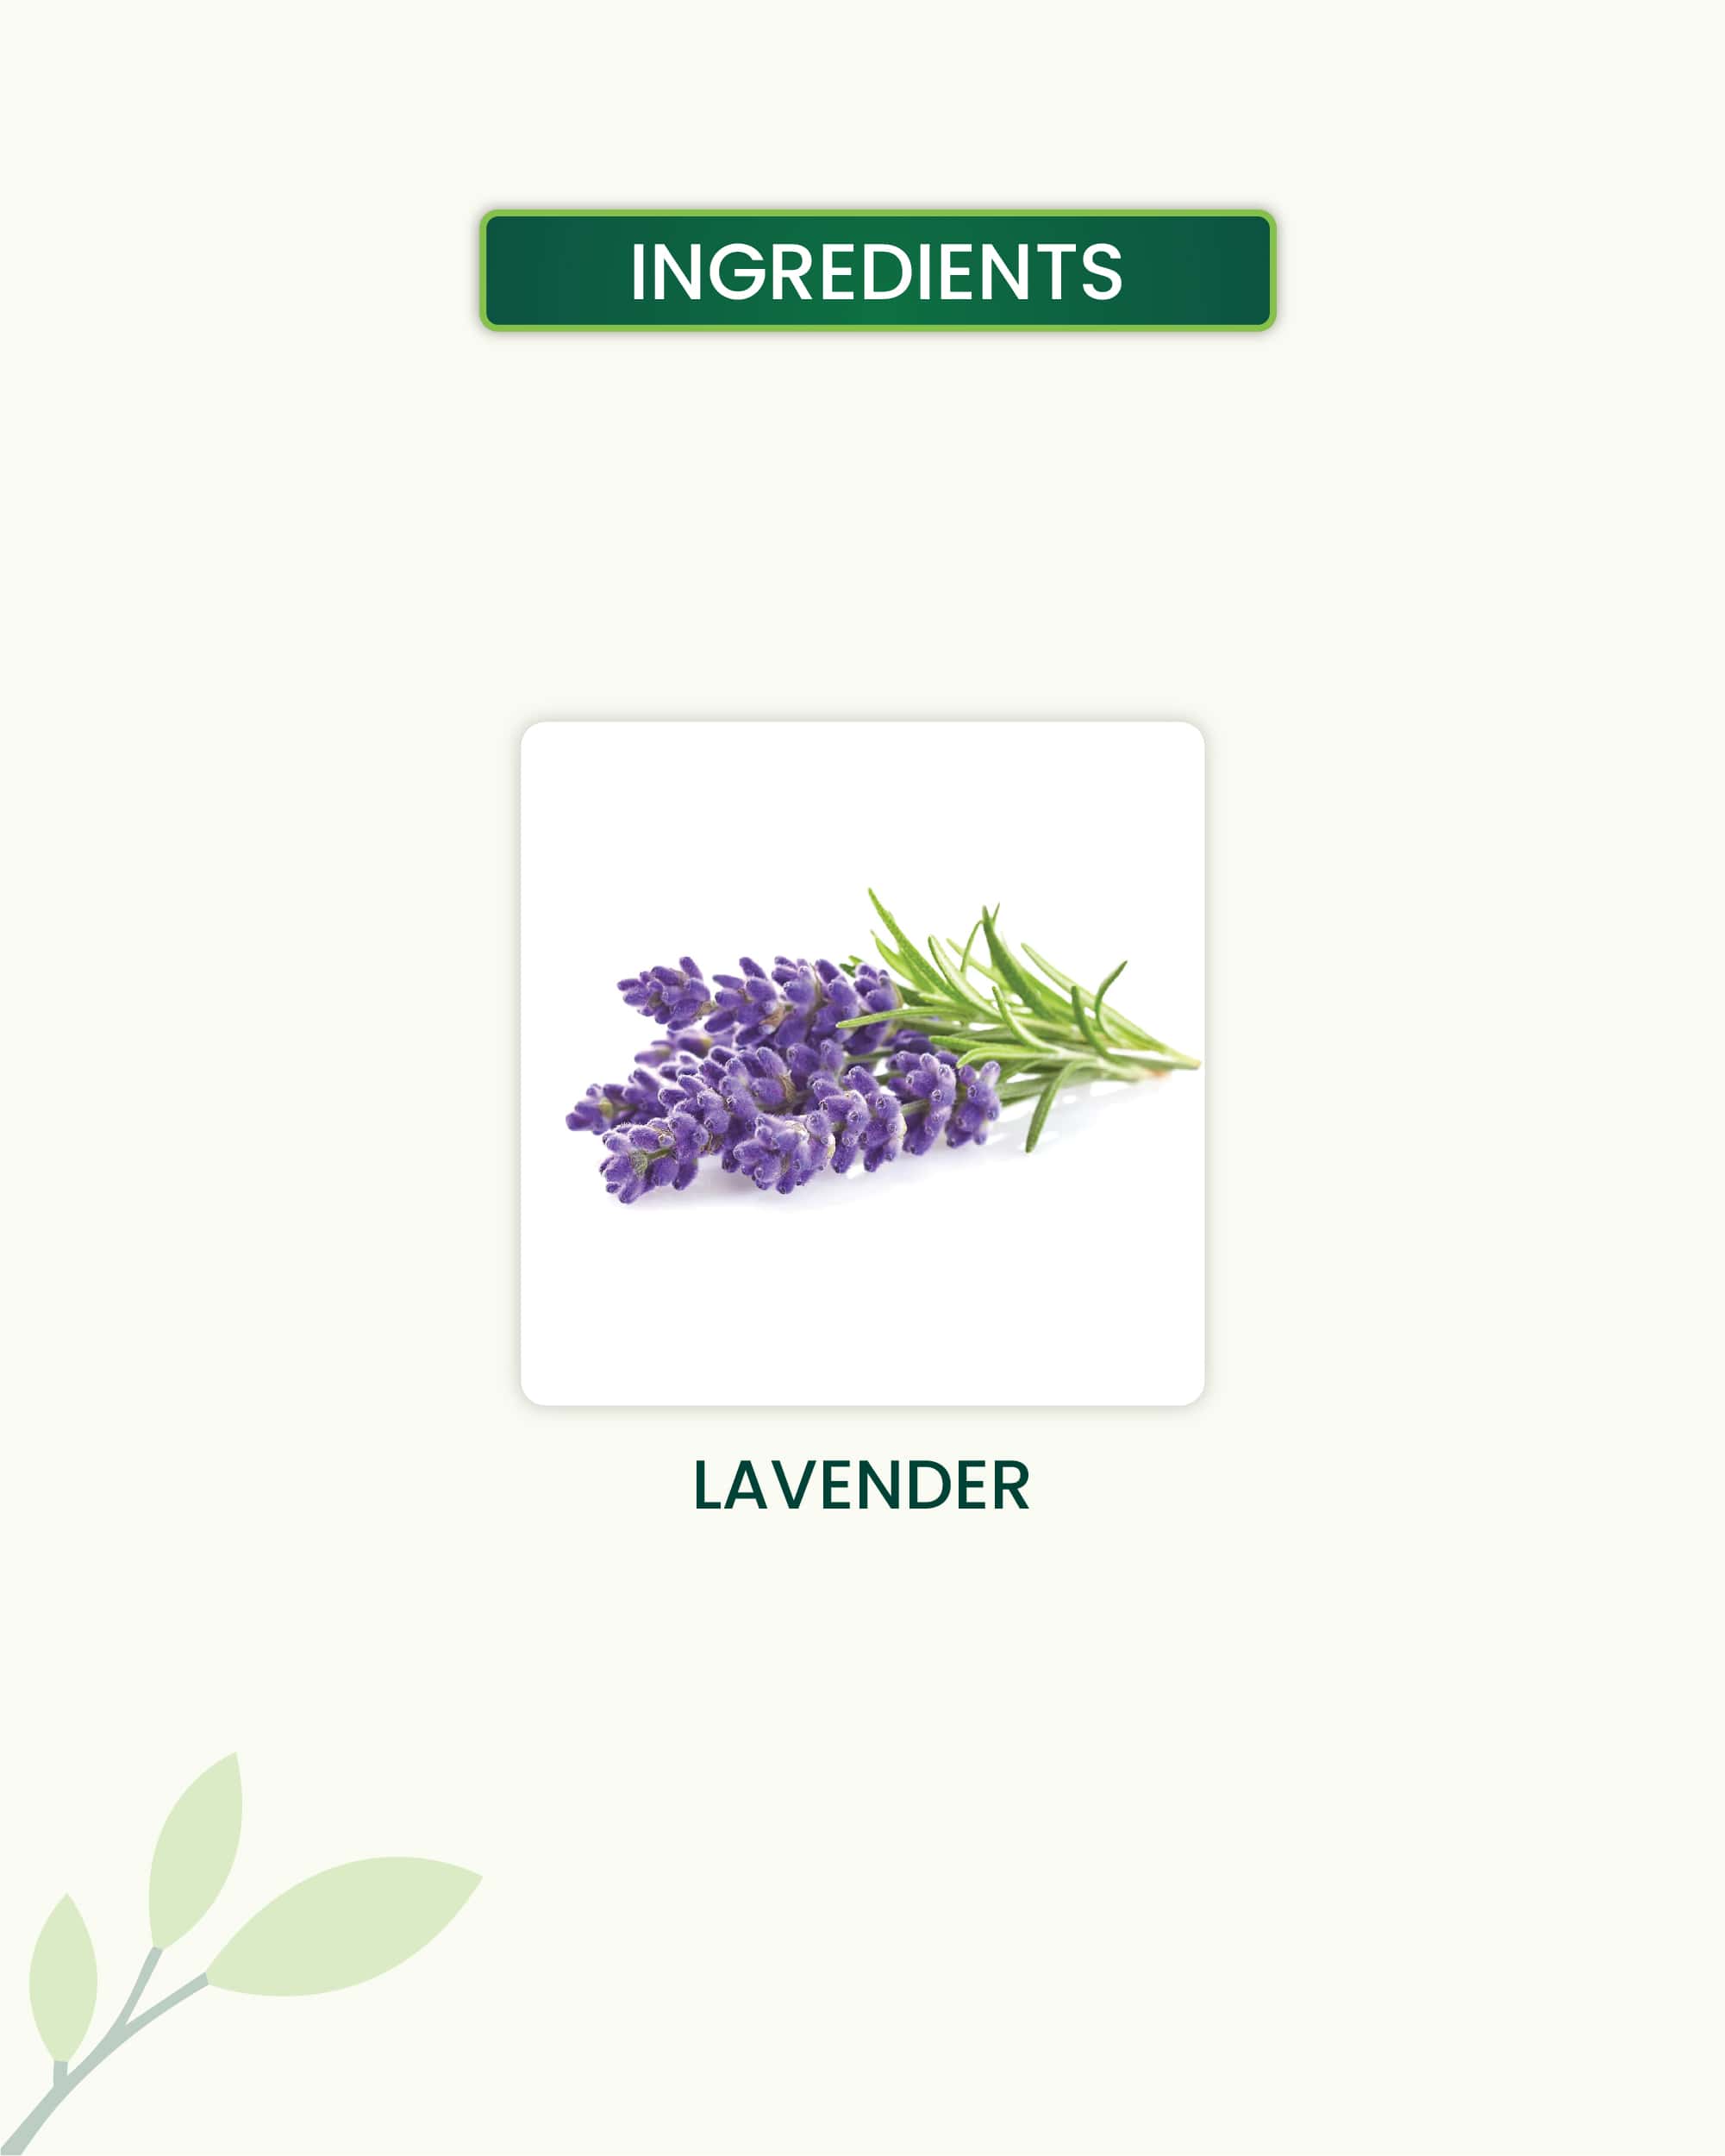 Lavender Essential Oil Key Ingredients